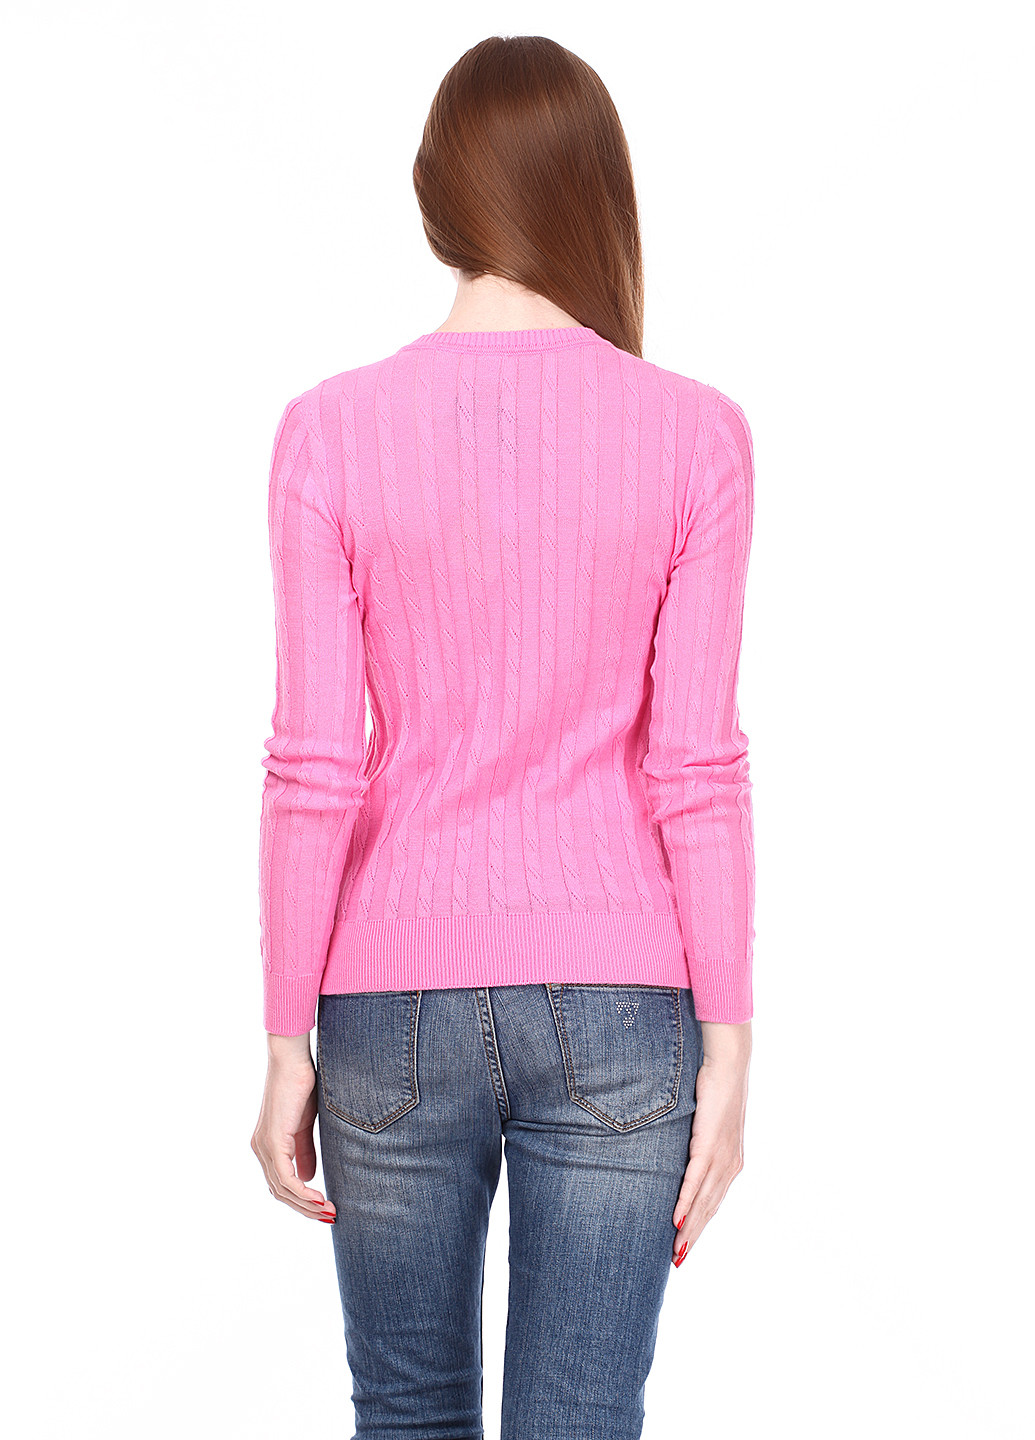 Розовый демисезонный пуловер пуловер Folgore Milano